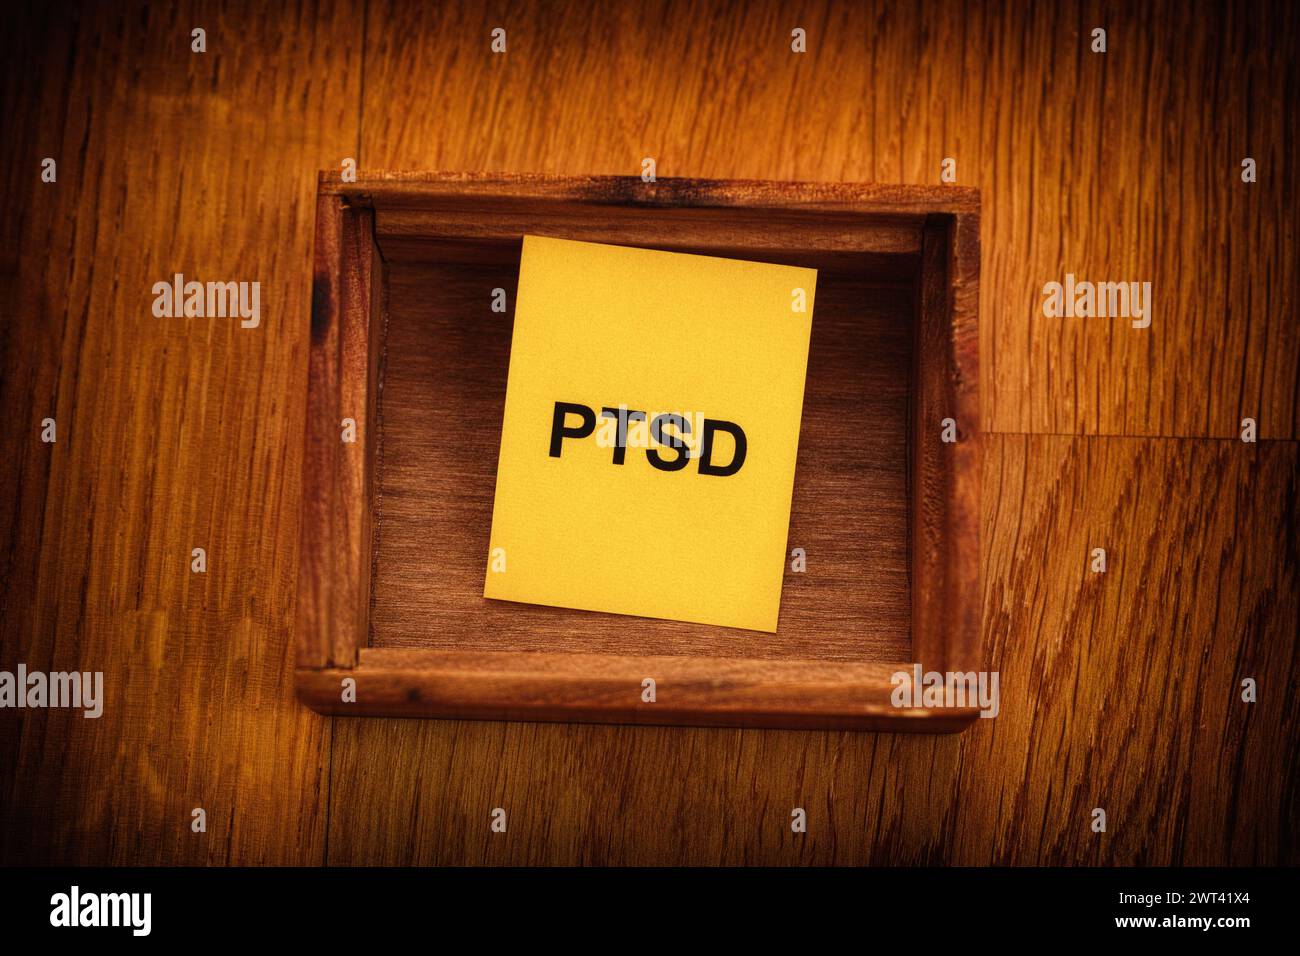 Ein gelbes Stück Papier mit der Abkürzung PTSD (posttraumatische Belastungsstörung), das in einer kleinen leeren Holzkiste liegt. Nahaufnahme. Stockfoto